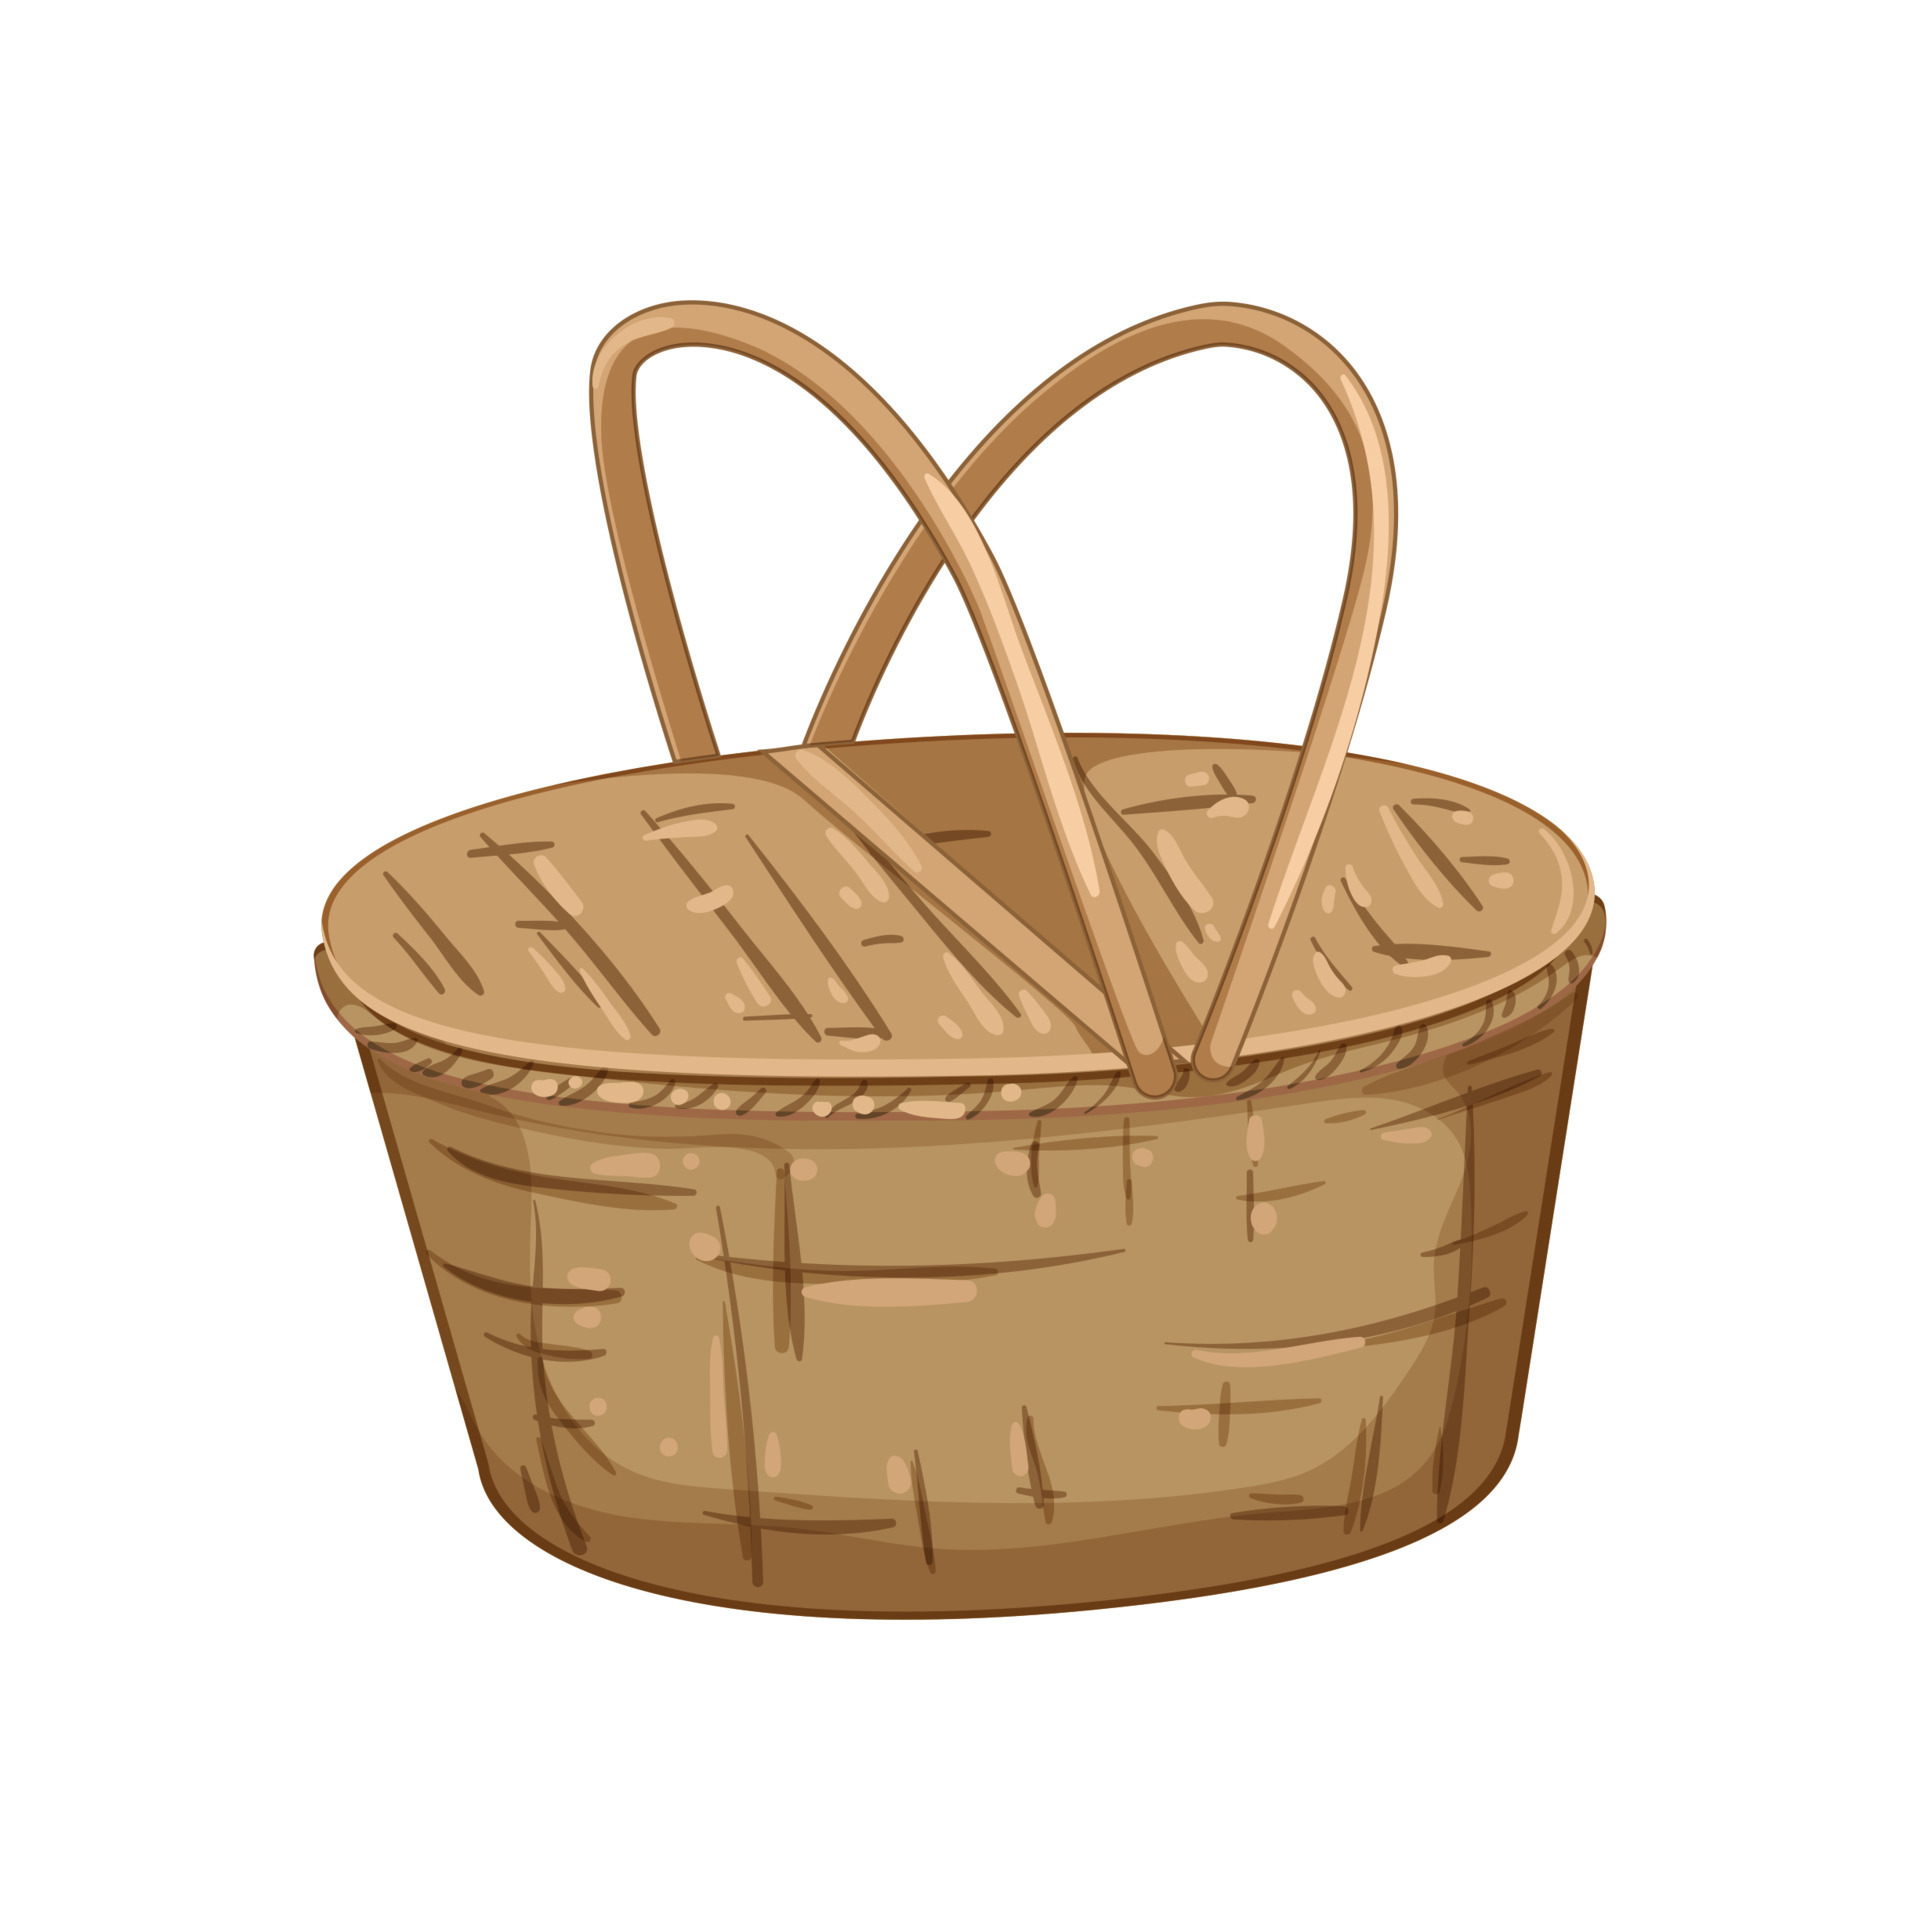 bread picnic basket cartoon vector illustration 17415832 Vector Art at  Vecteezy